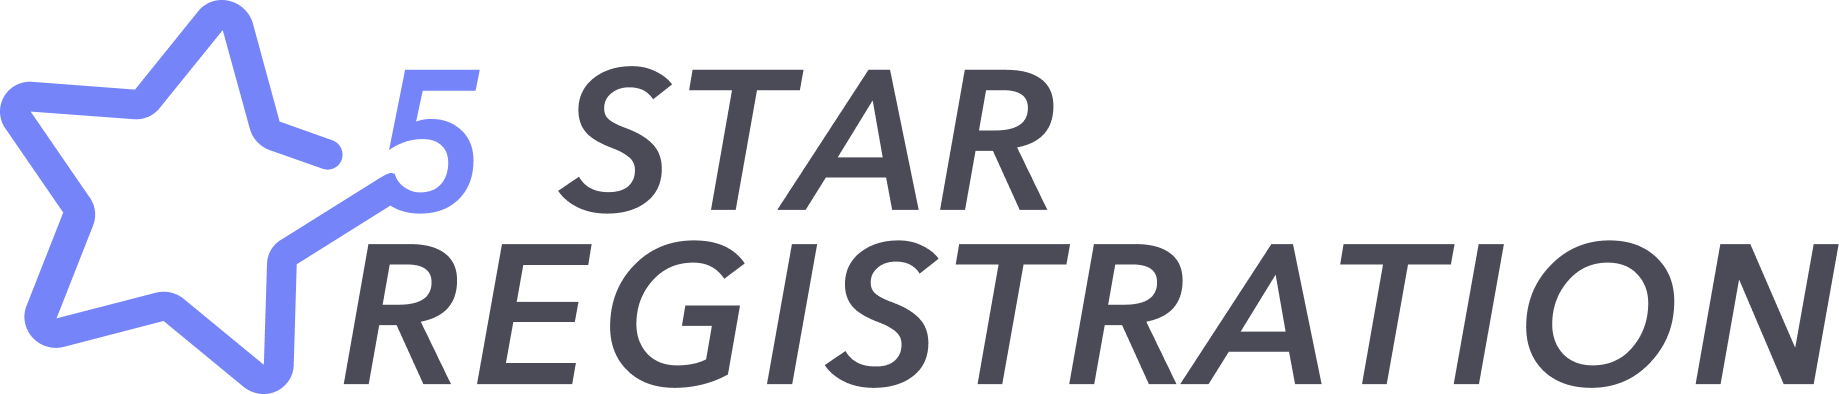 5 Star Registration